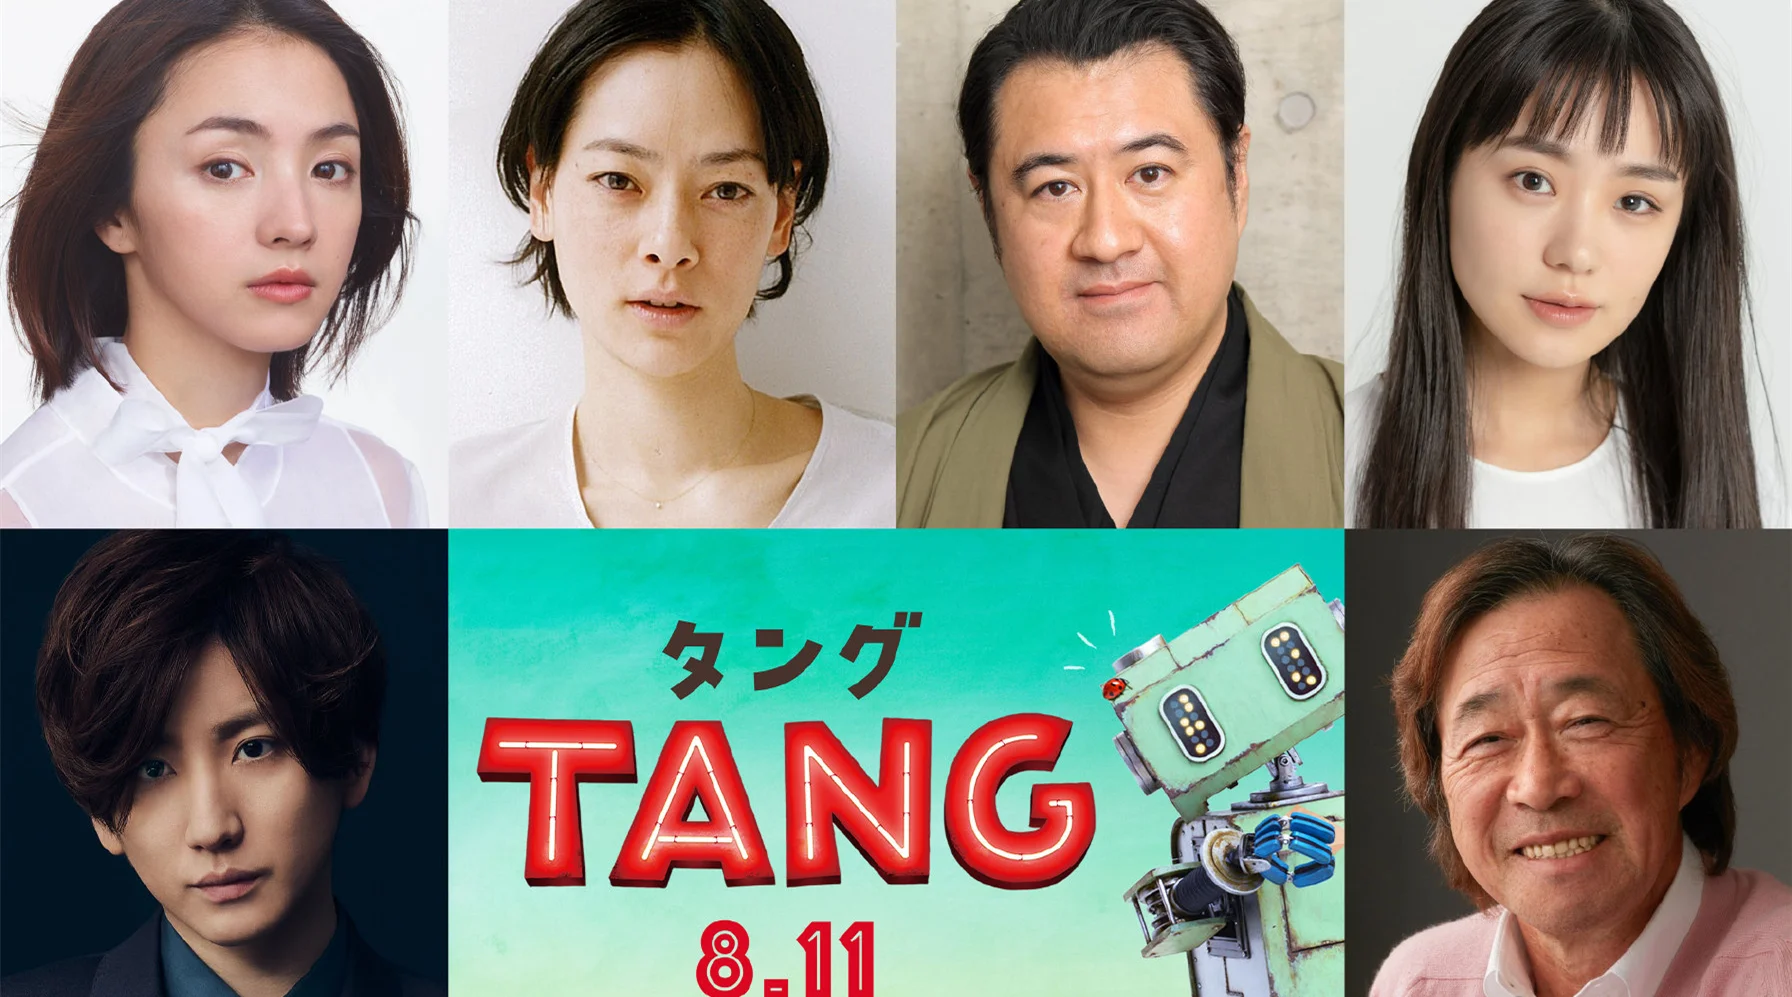 Kazuya Ninomiya starring in the film "Tang" first exposure trailer, released in Japan on August 11